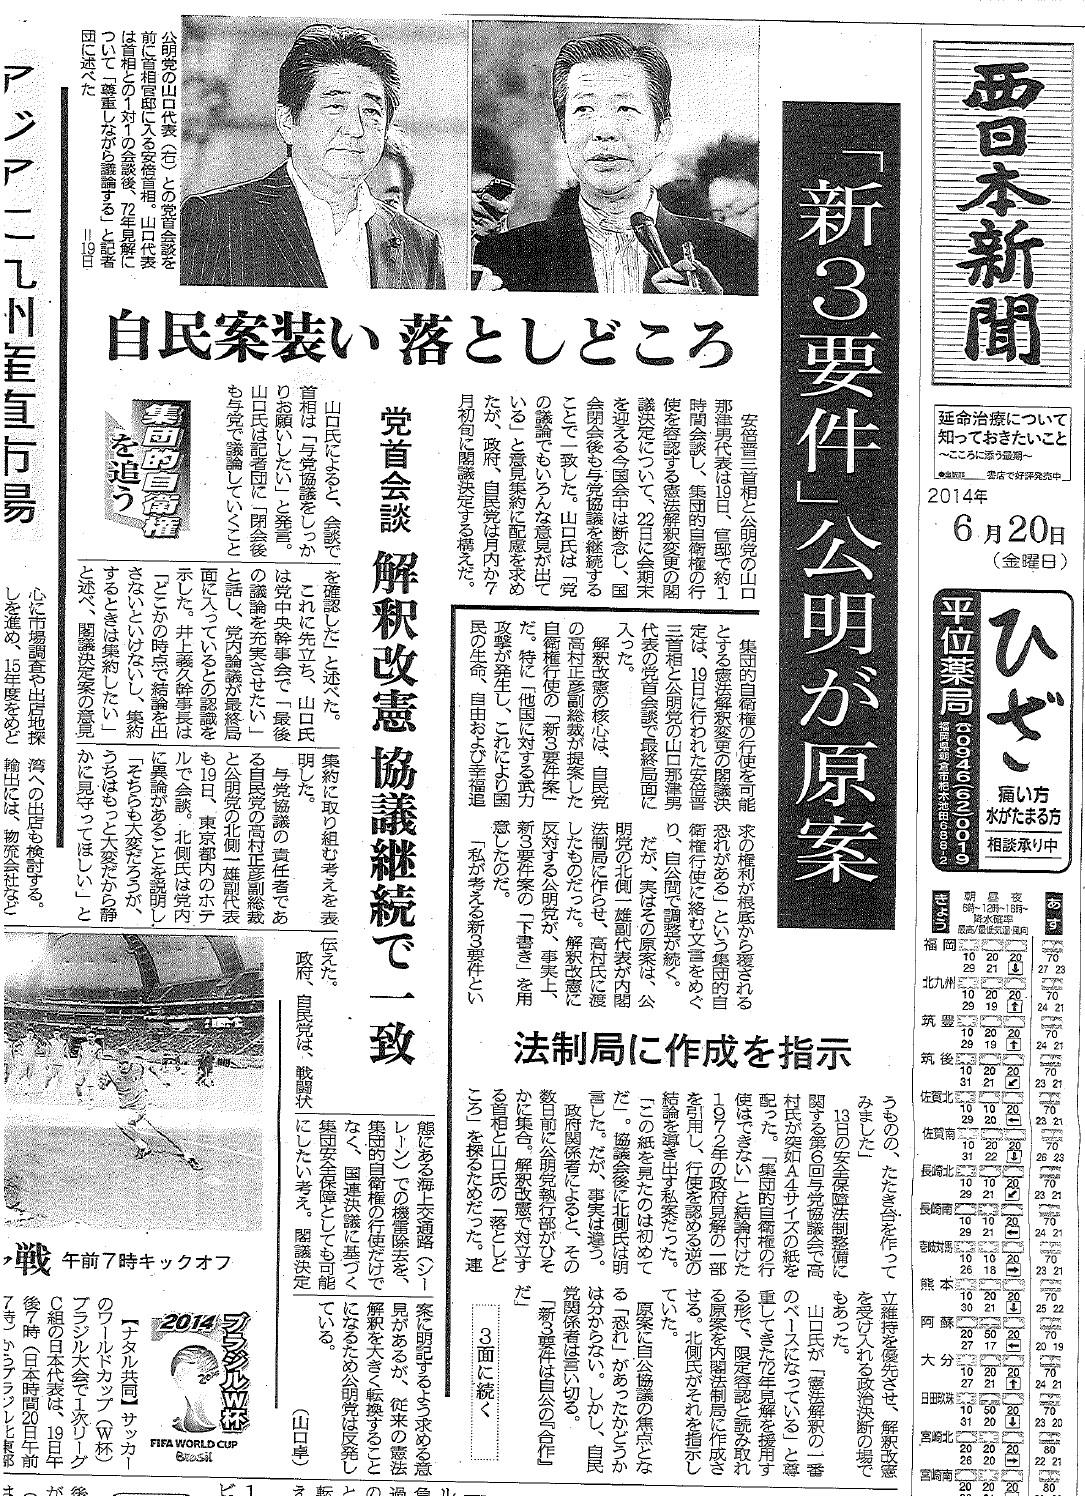 西日本新聞一面記事